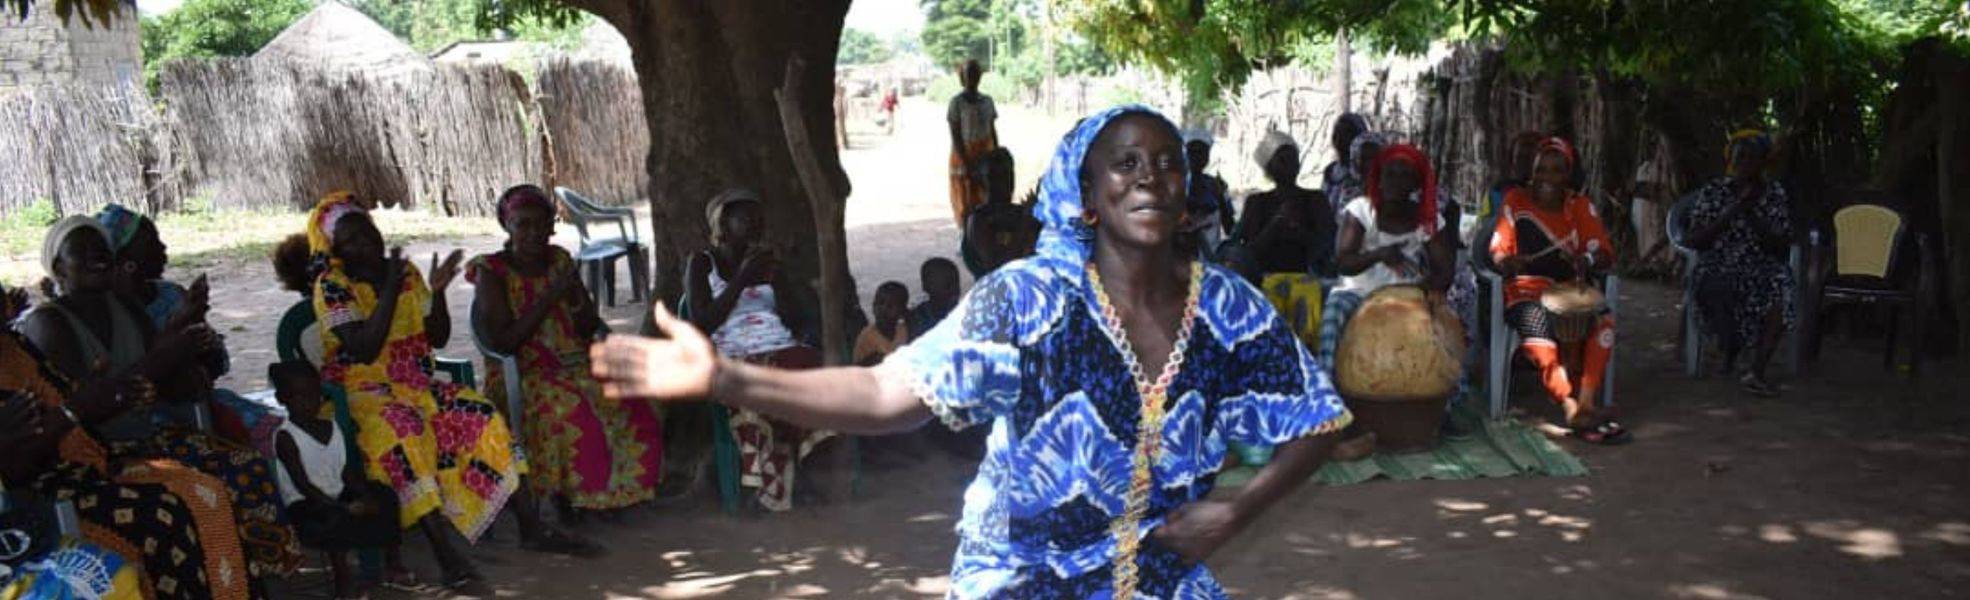 Freiwilligenarbeit im Senegal mit Rainbow Garden Village